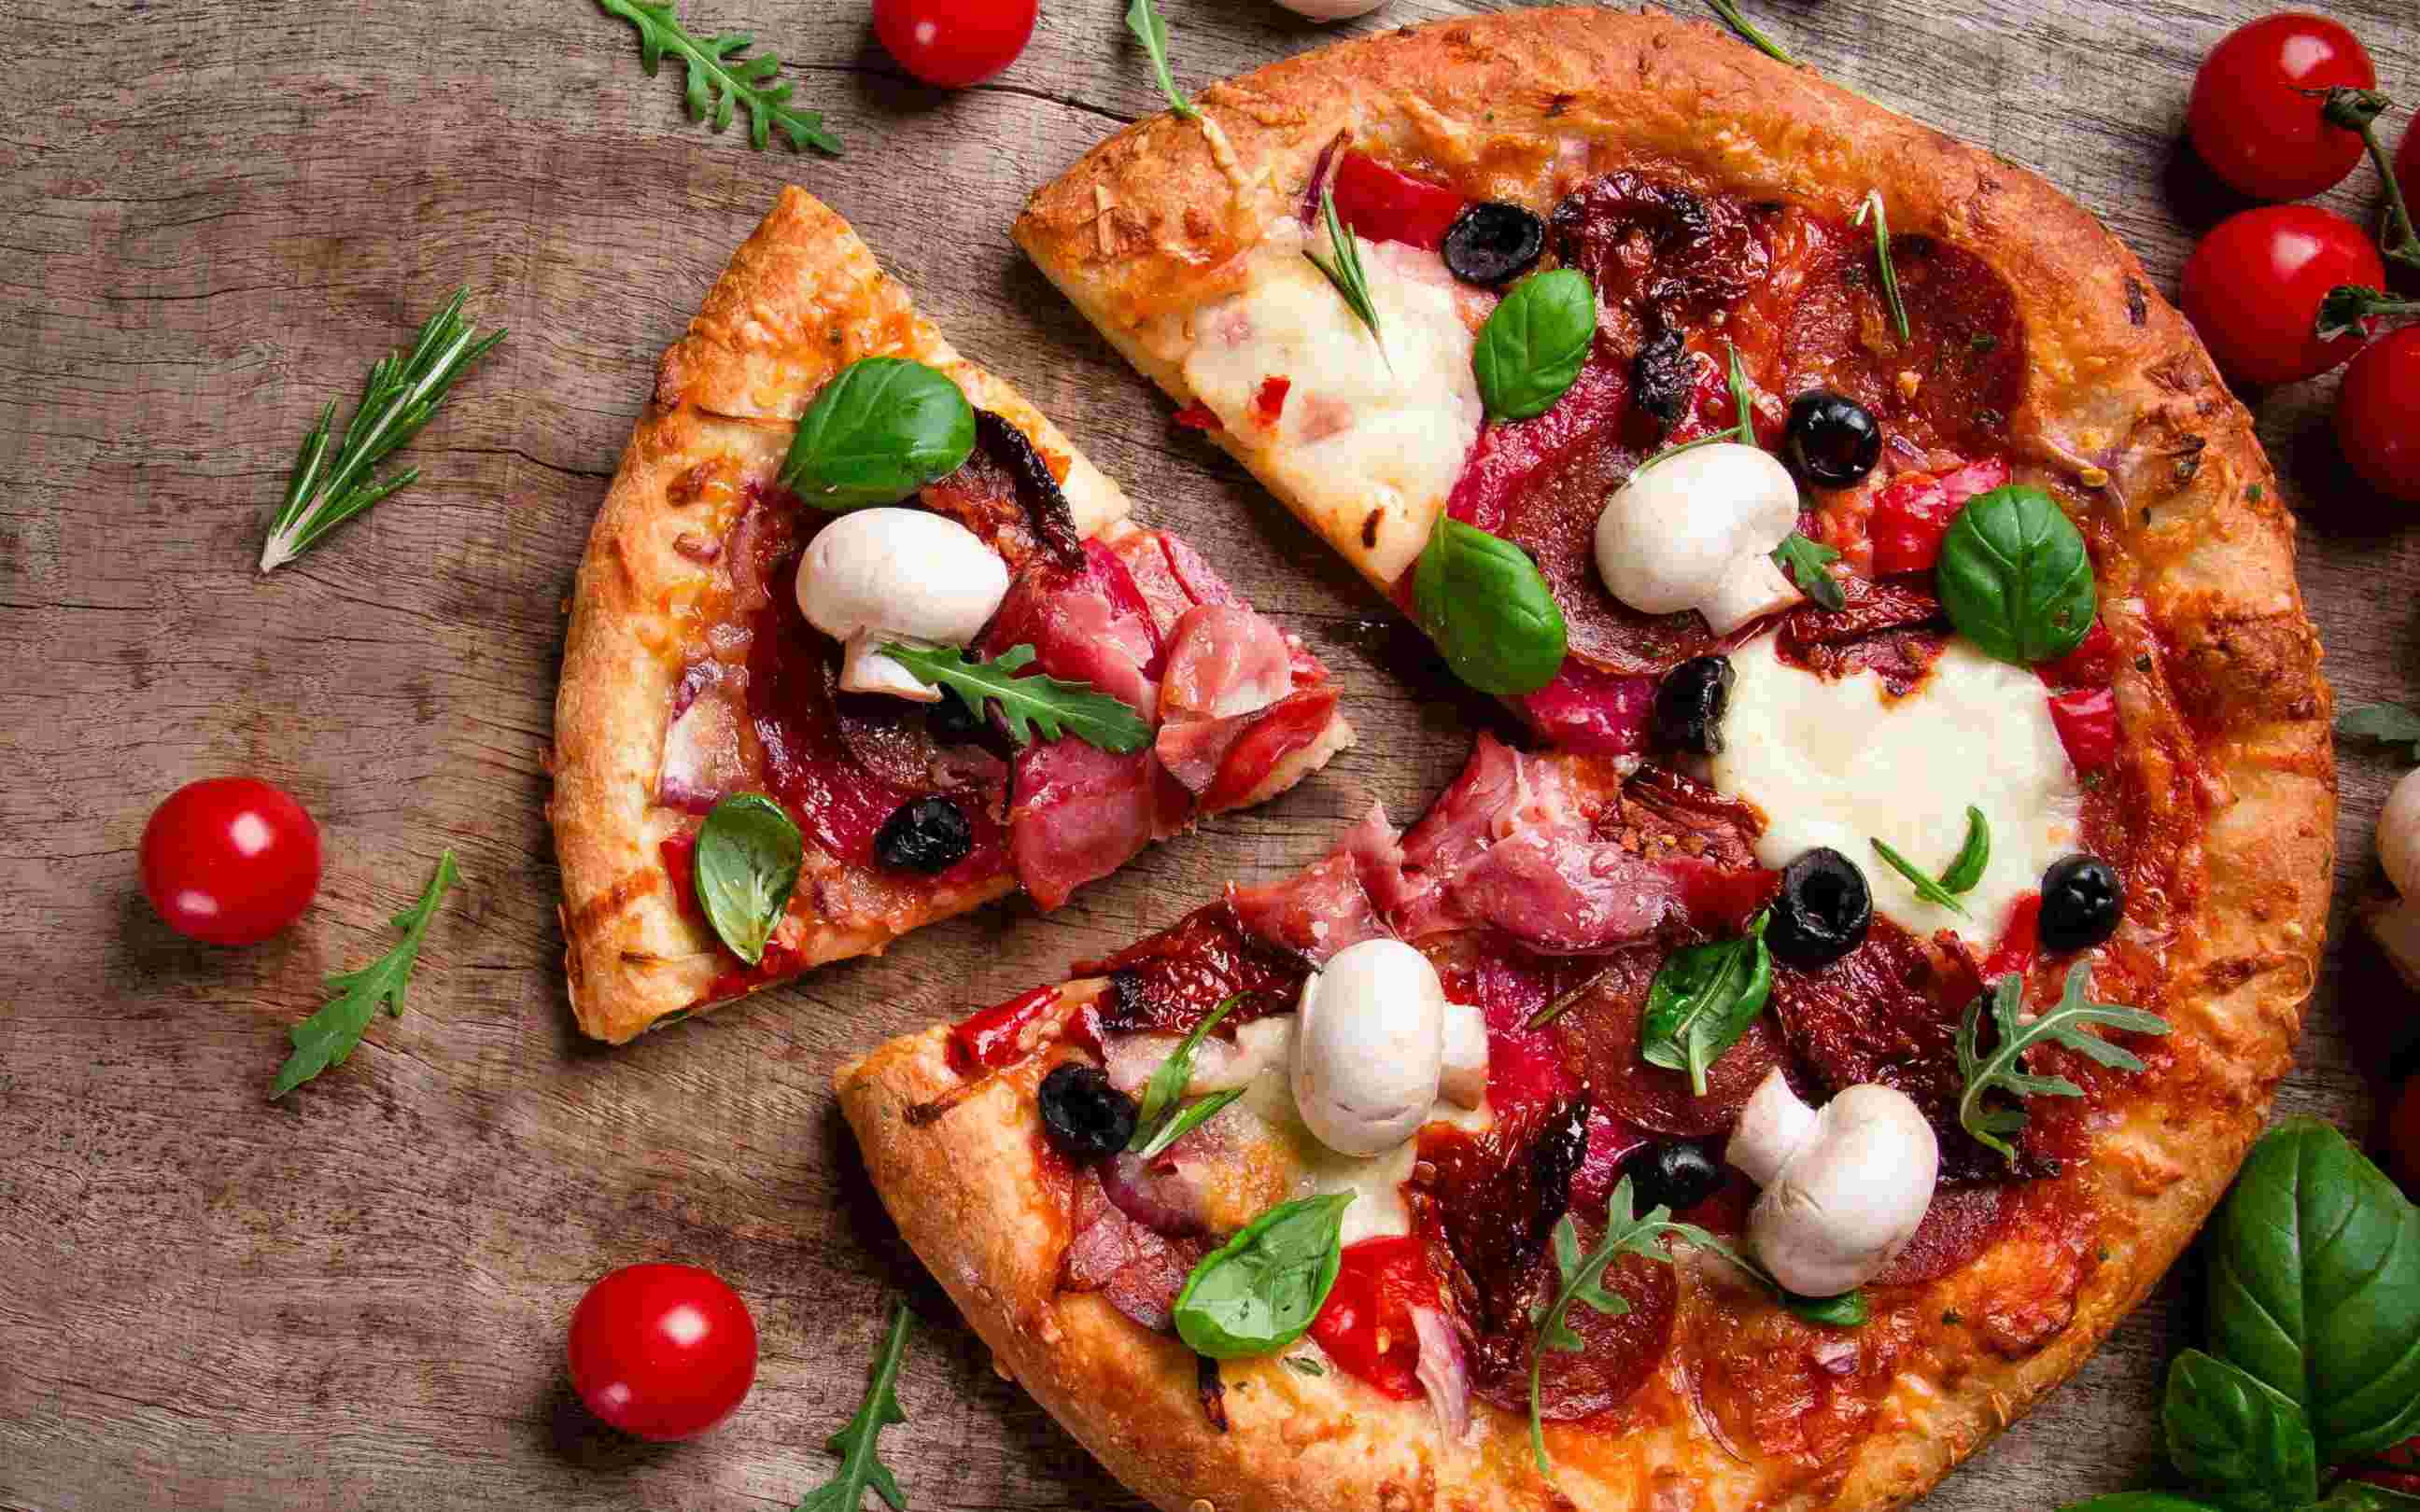 Su nombre es The Pizza Self 24-hour y ofrece, por los momentos, dos sabores: margarita y cuatro quesos